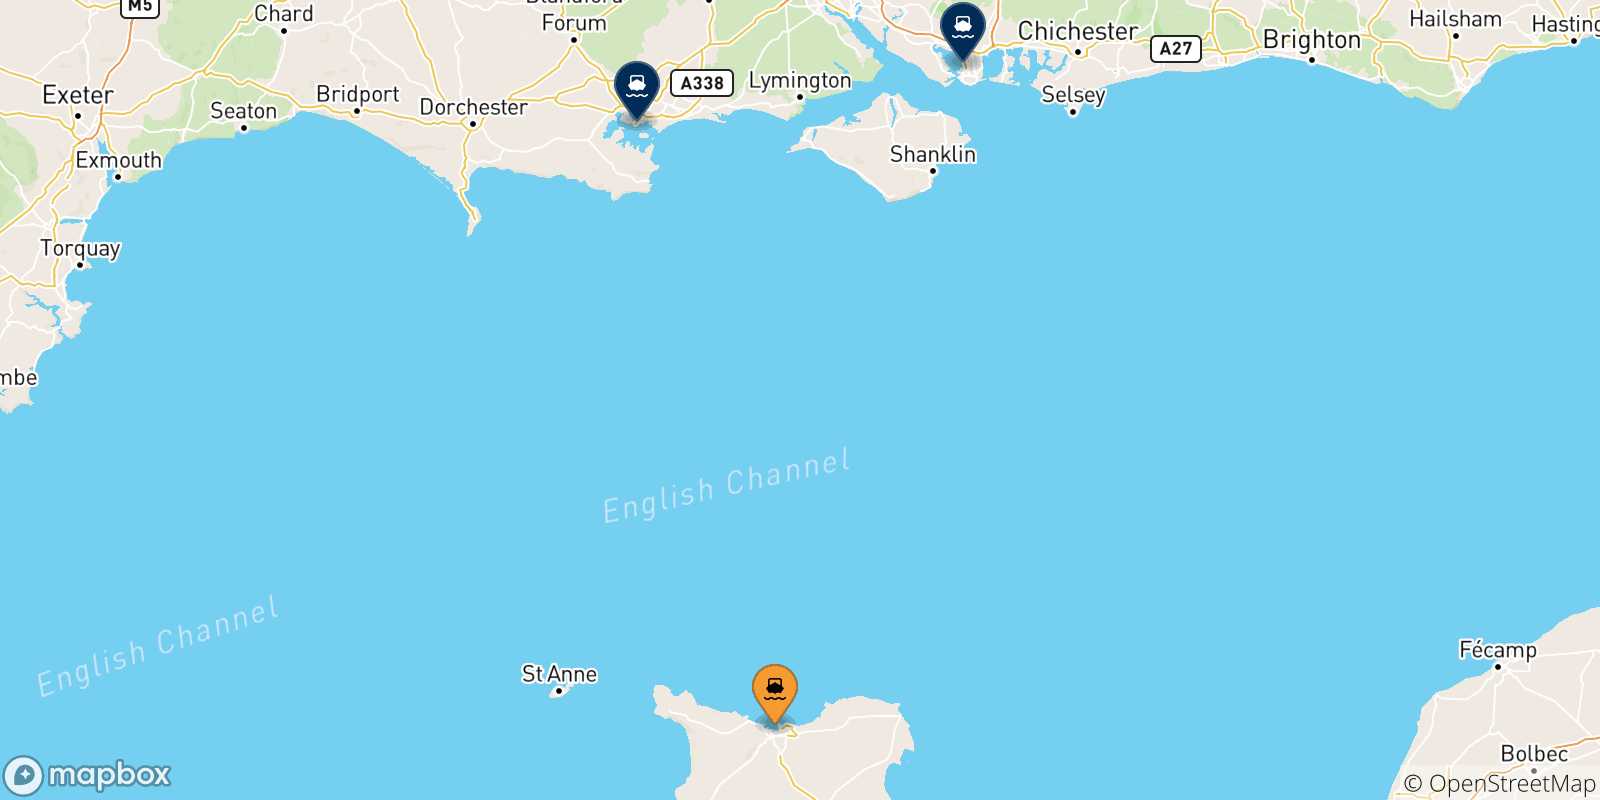 Mappa delle possibili rotte tra Cherbourg e il Regno Unito